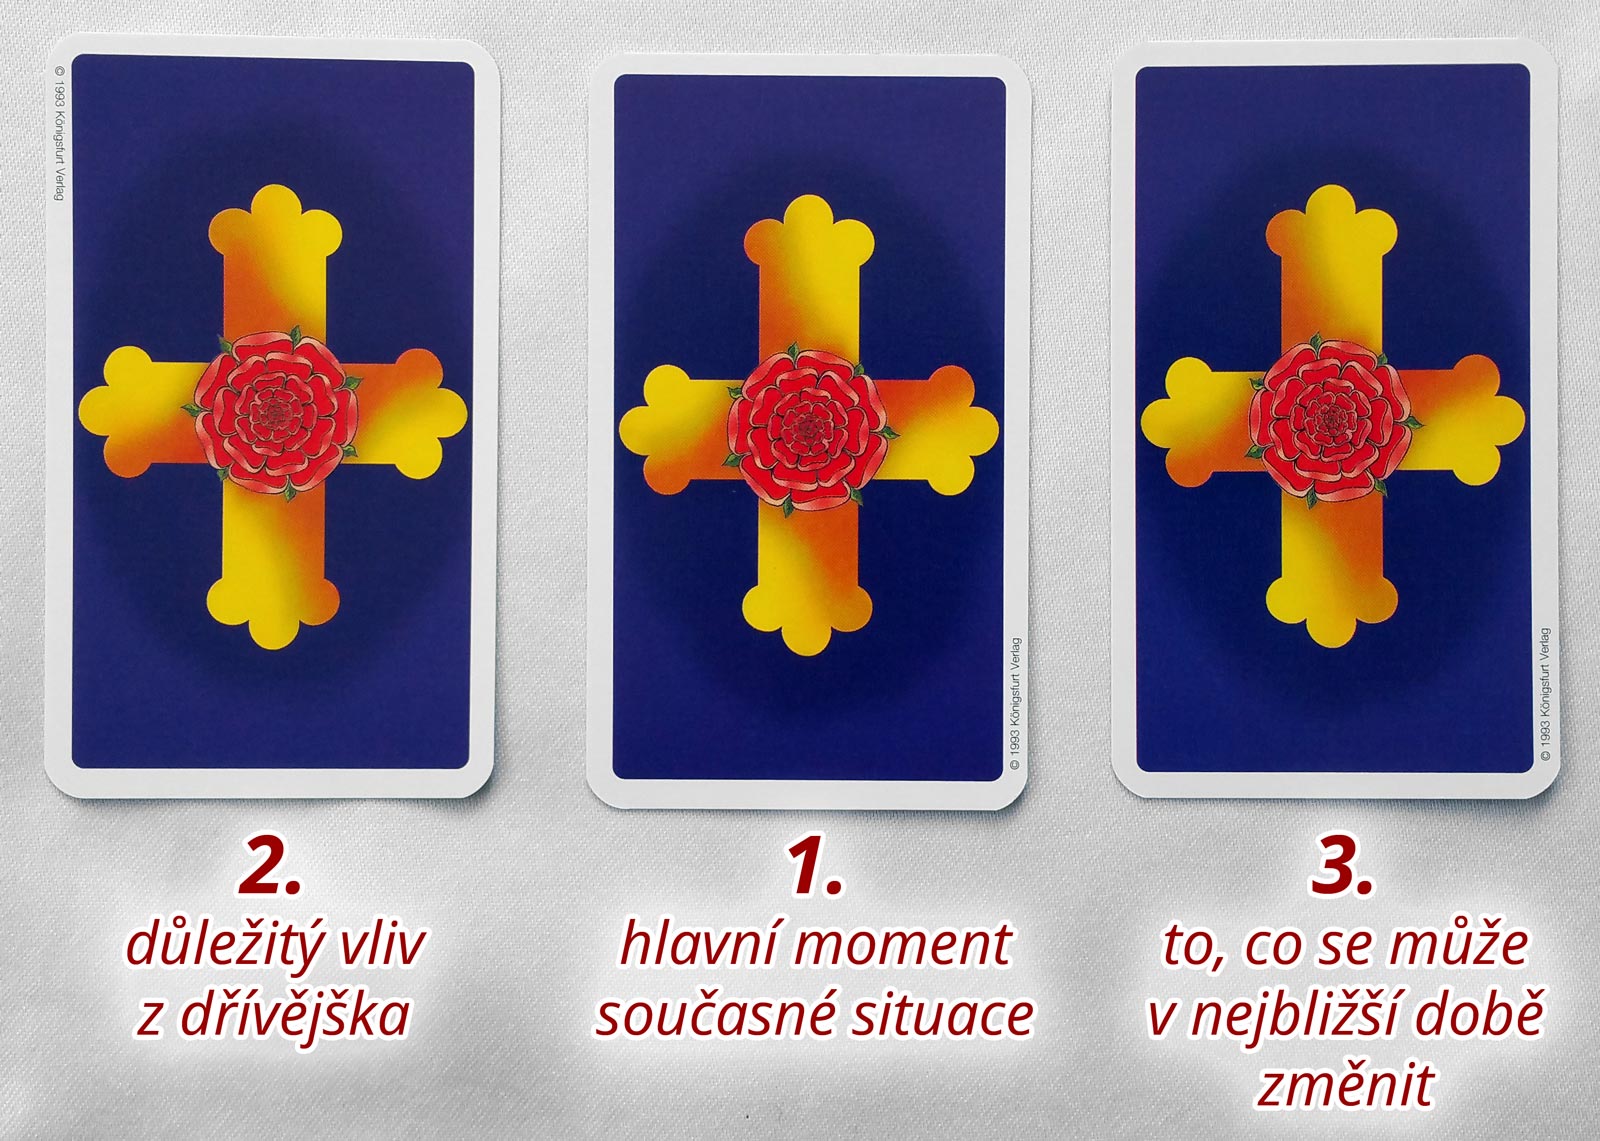 Tři karty: Důležitý vliv z dřívějška; Hlavní moment současné situace; To, co se může v nejbližší době změnit